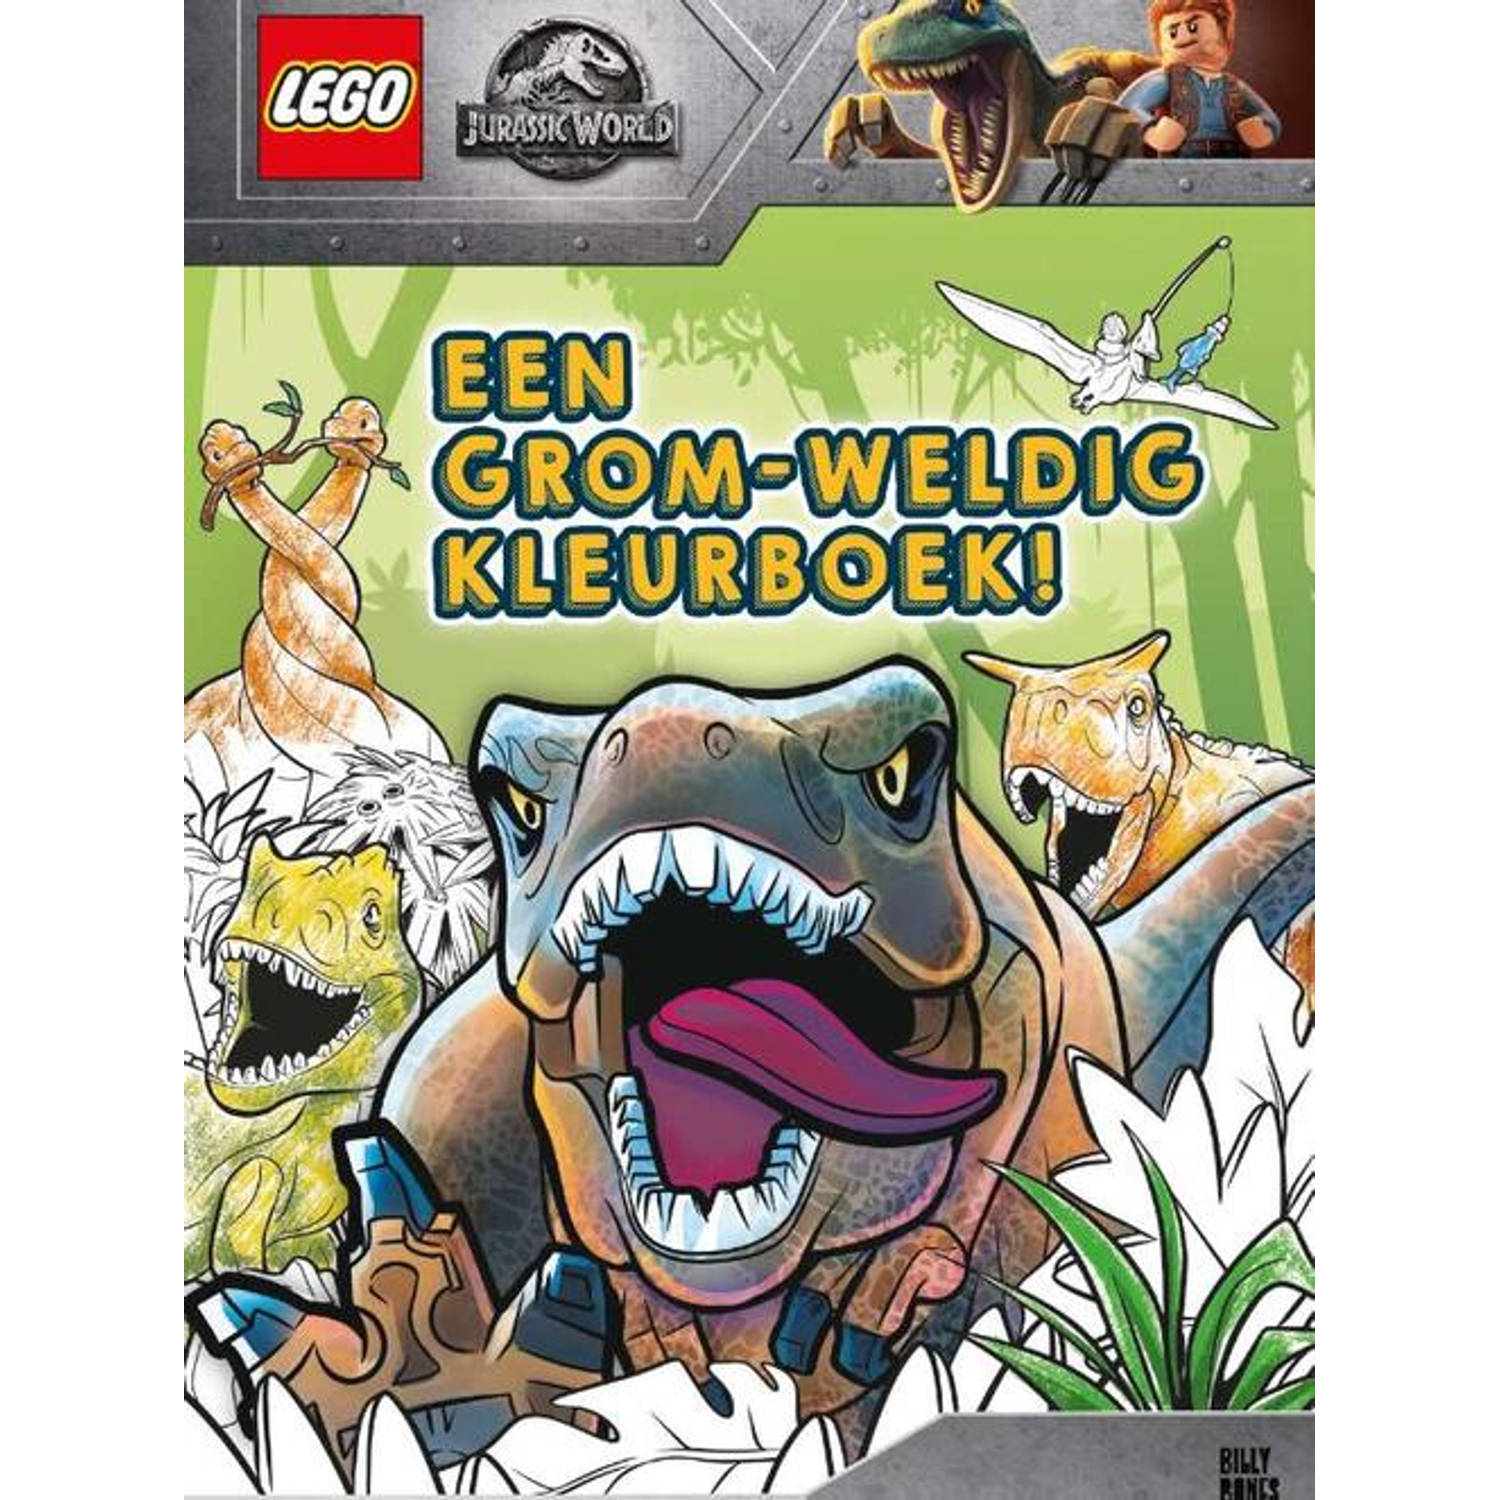 Lego Jurassic World - Een Grom-weldig Kleurboek